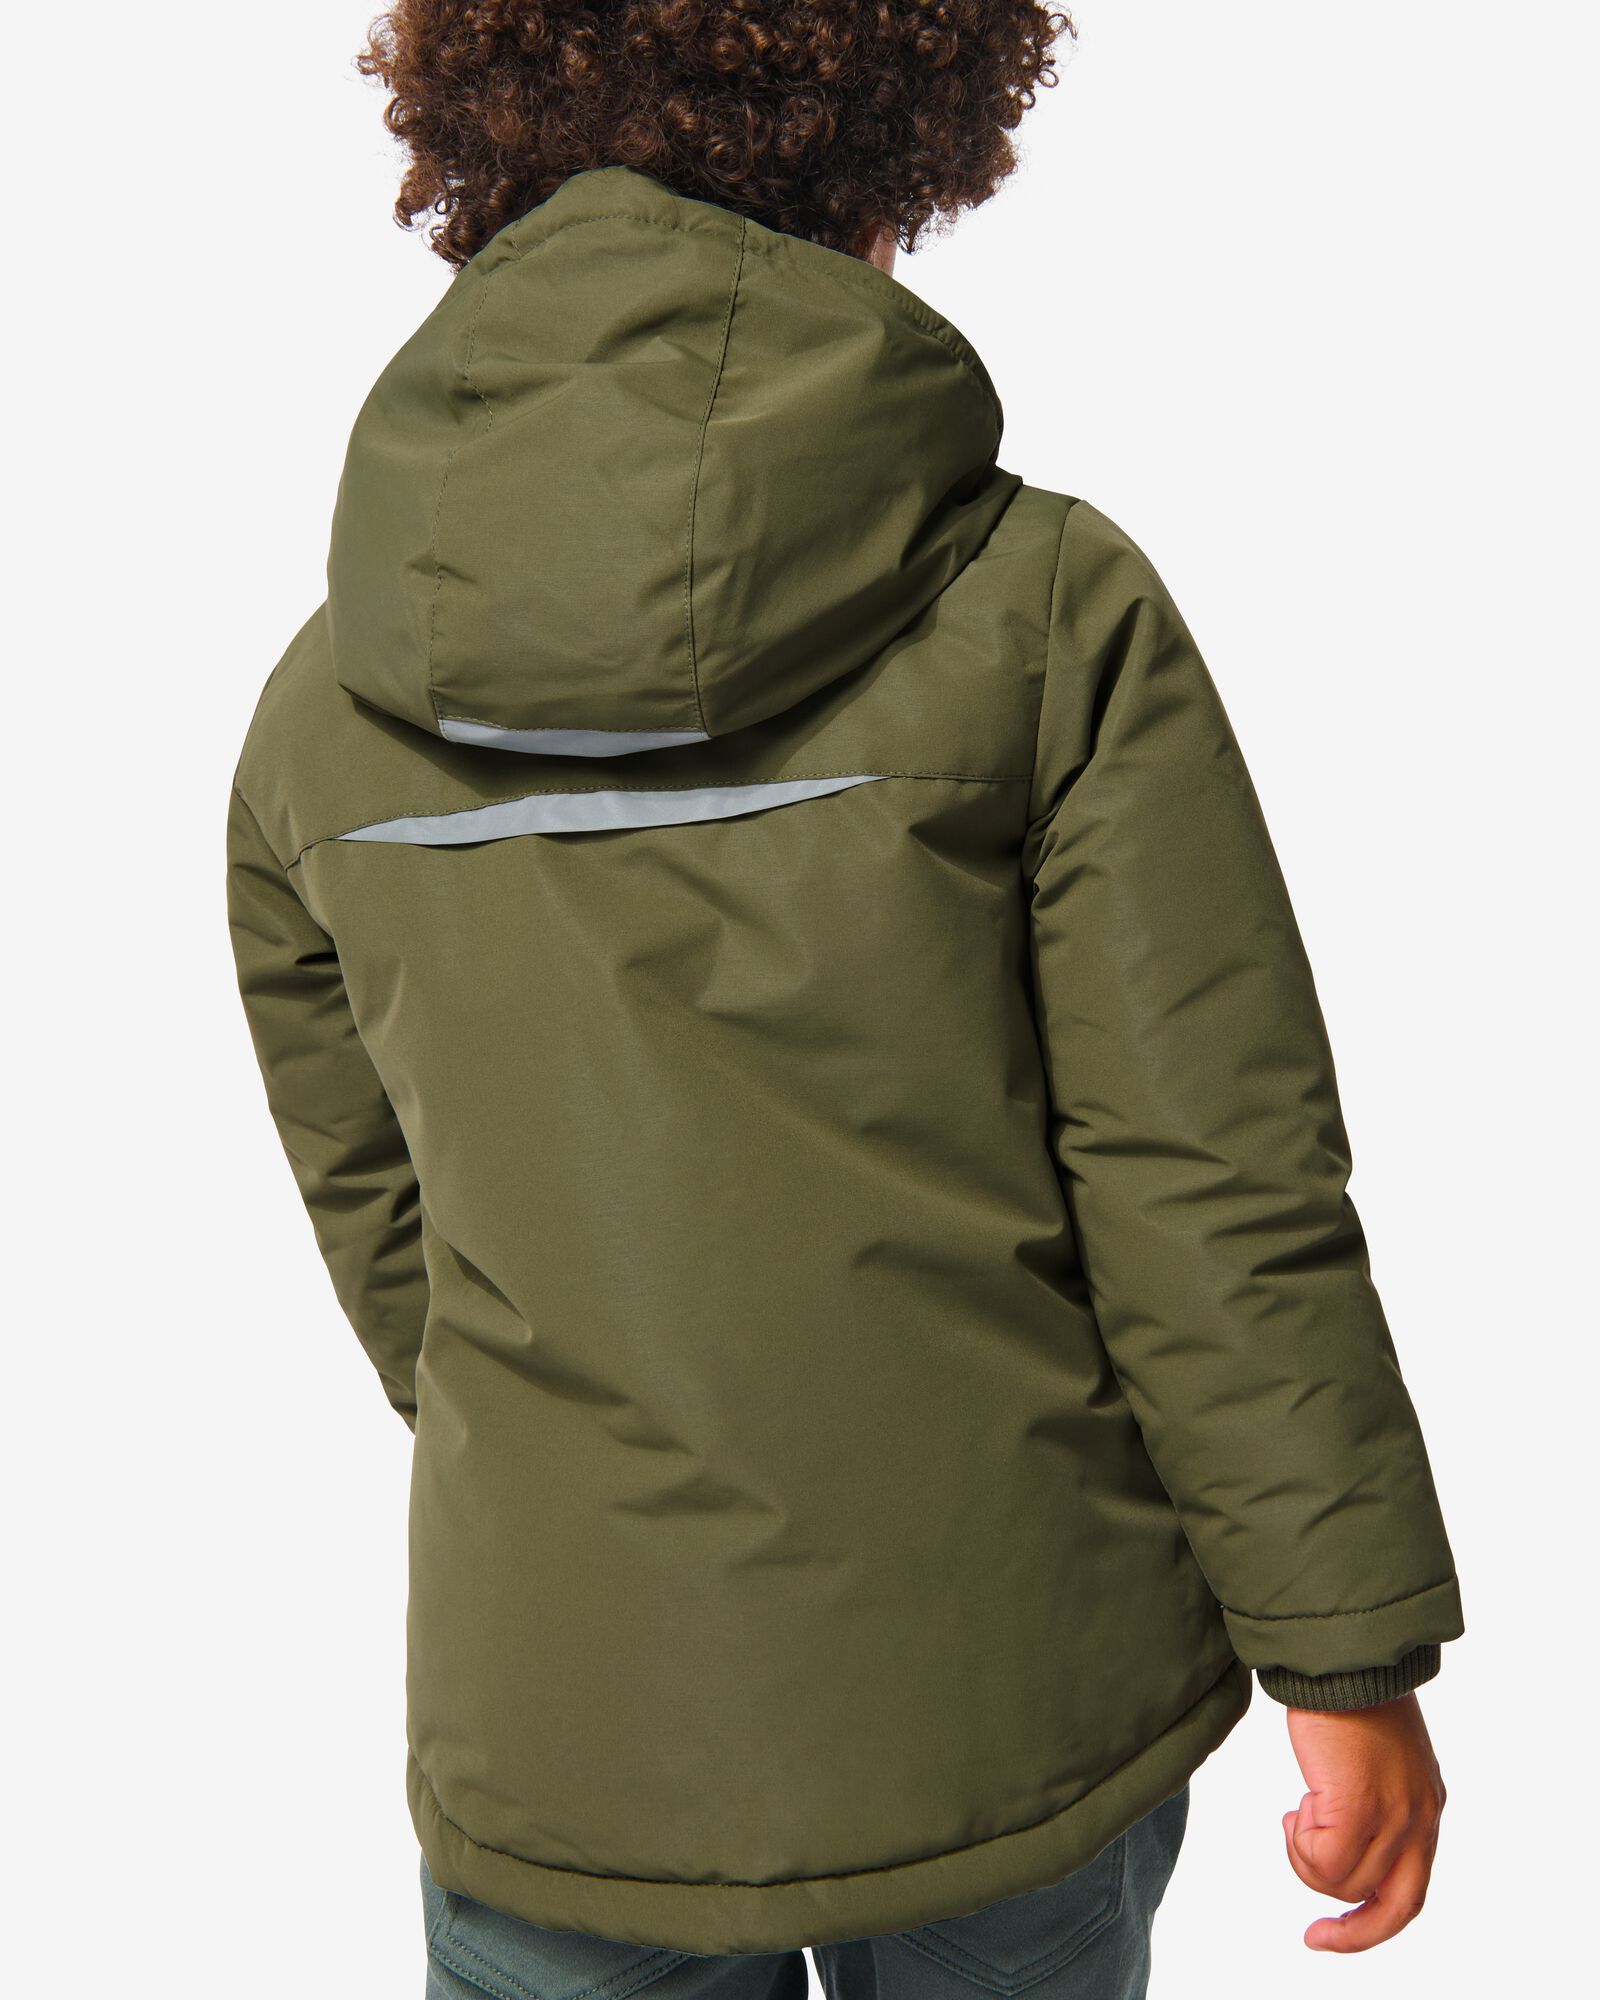 manteau enfant avec capuche vert vert - 30767509GREEN - HEMA